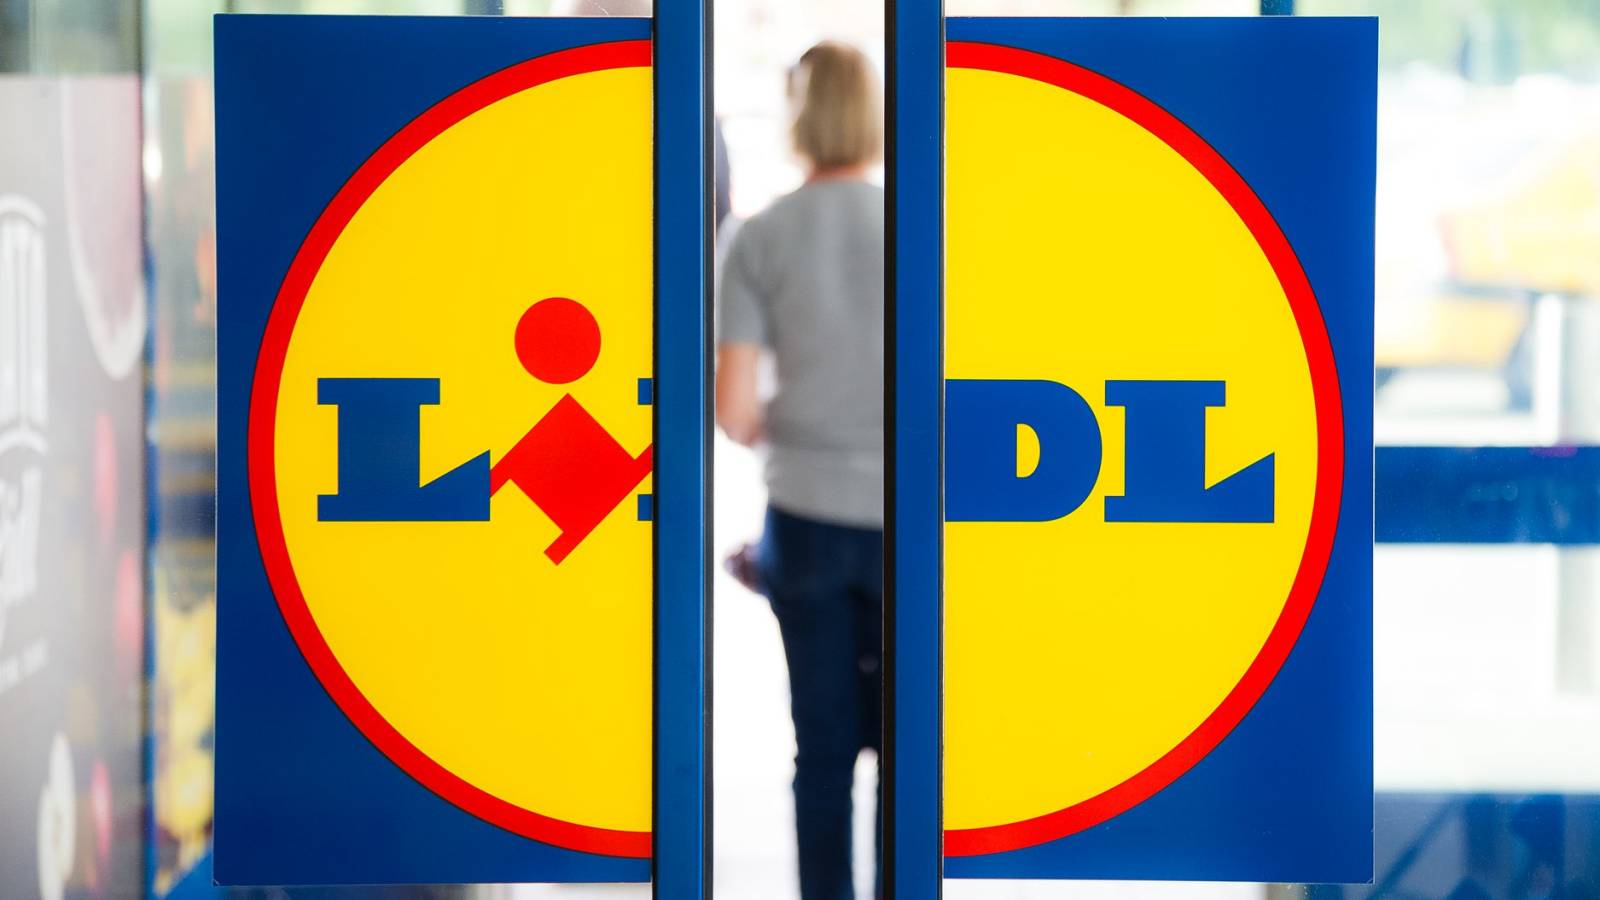 La decisión de LIDL Rumania anunciada a los rumanos GRANDES cambios en todas las tiendas